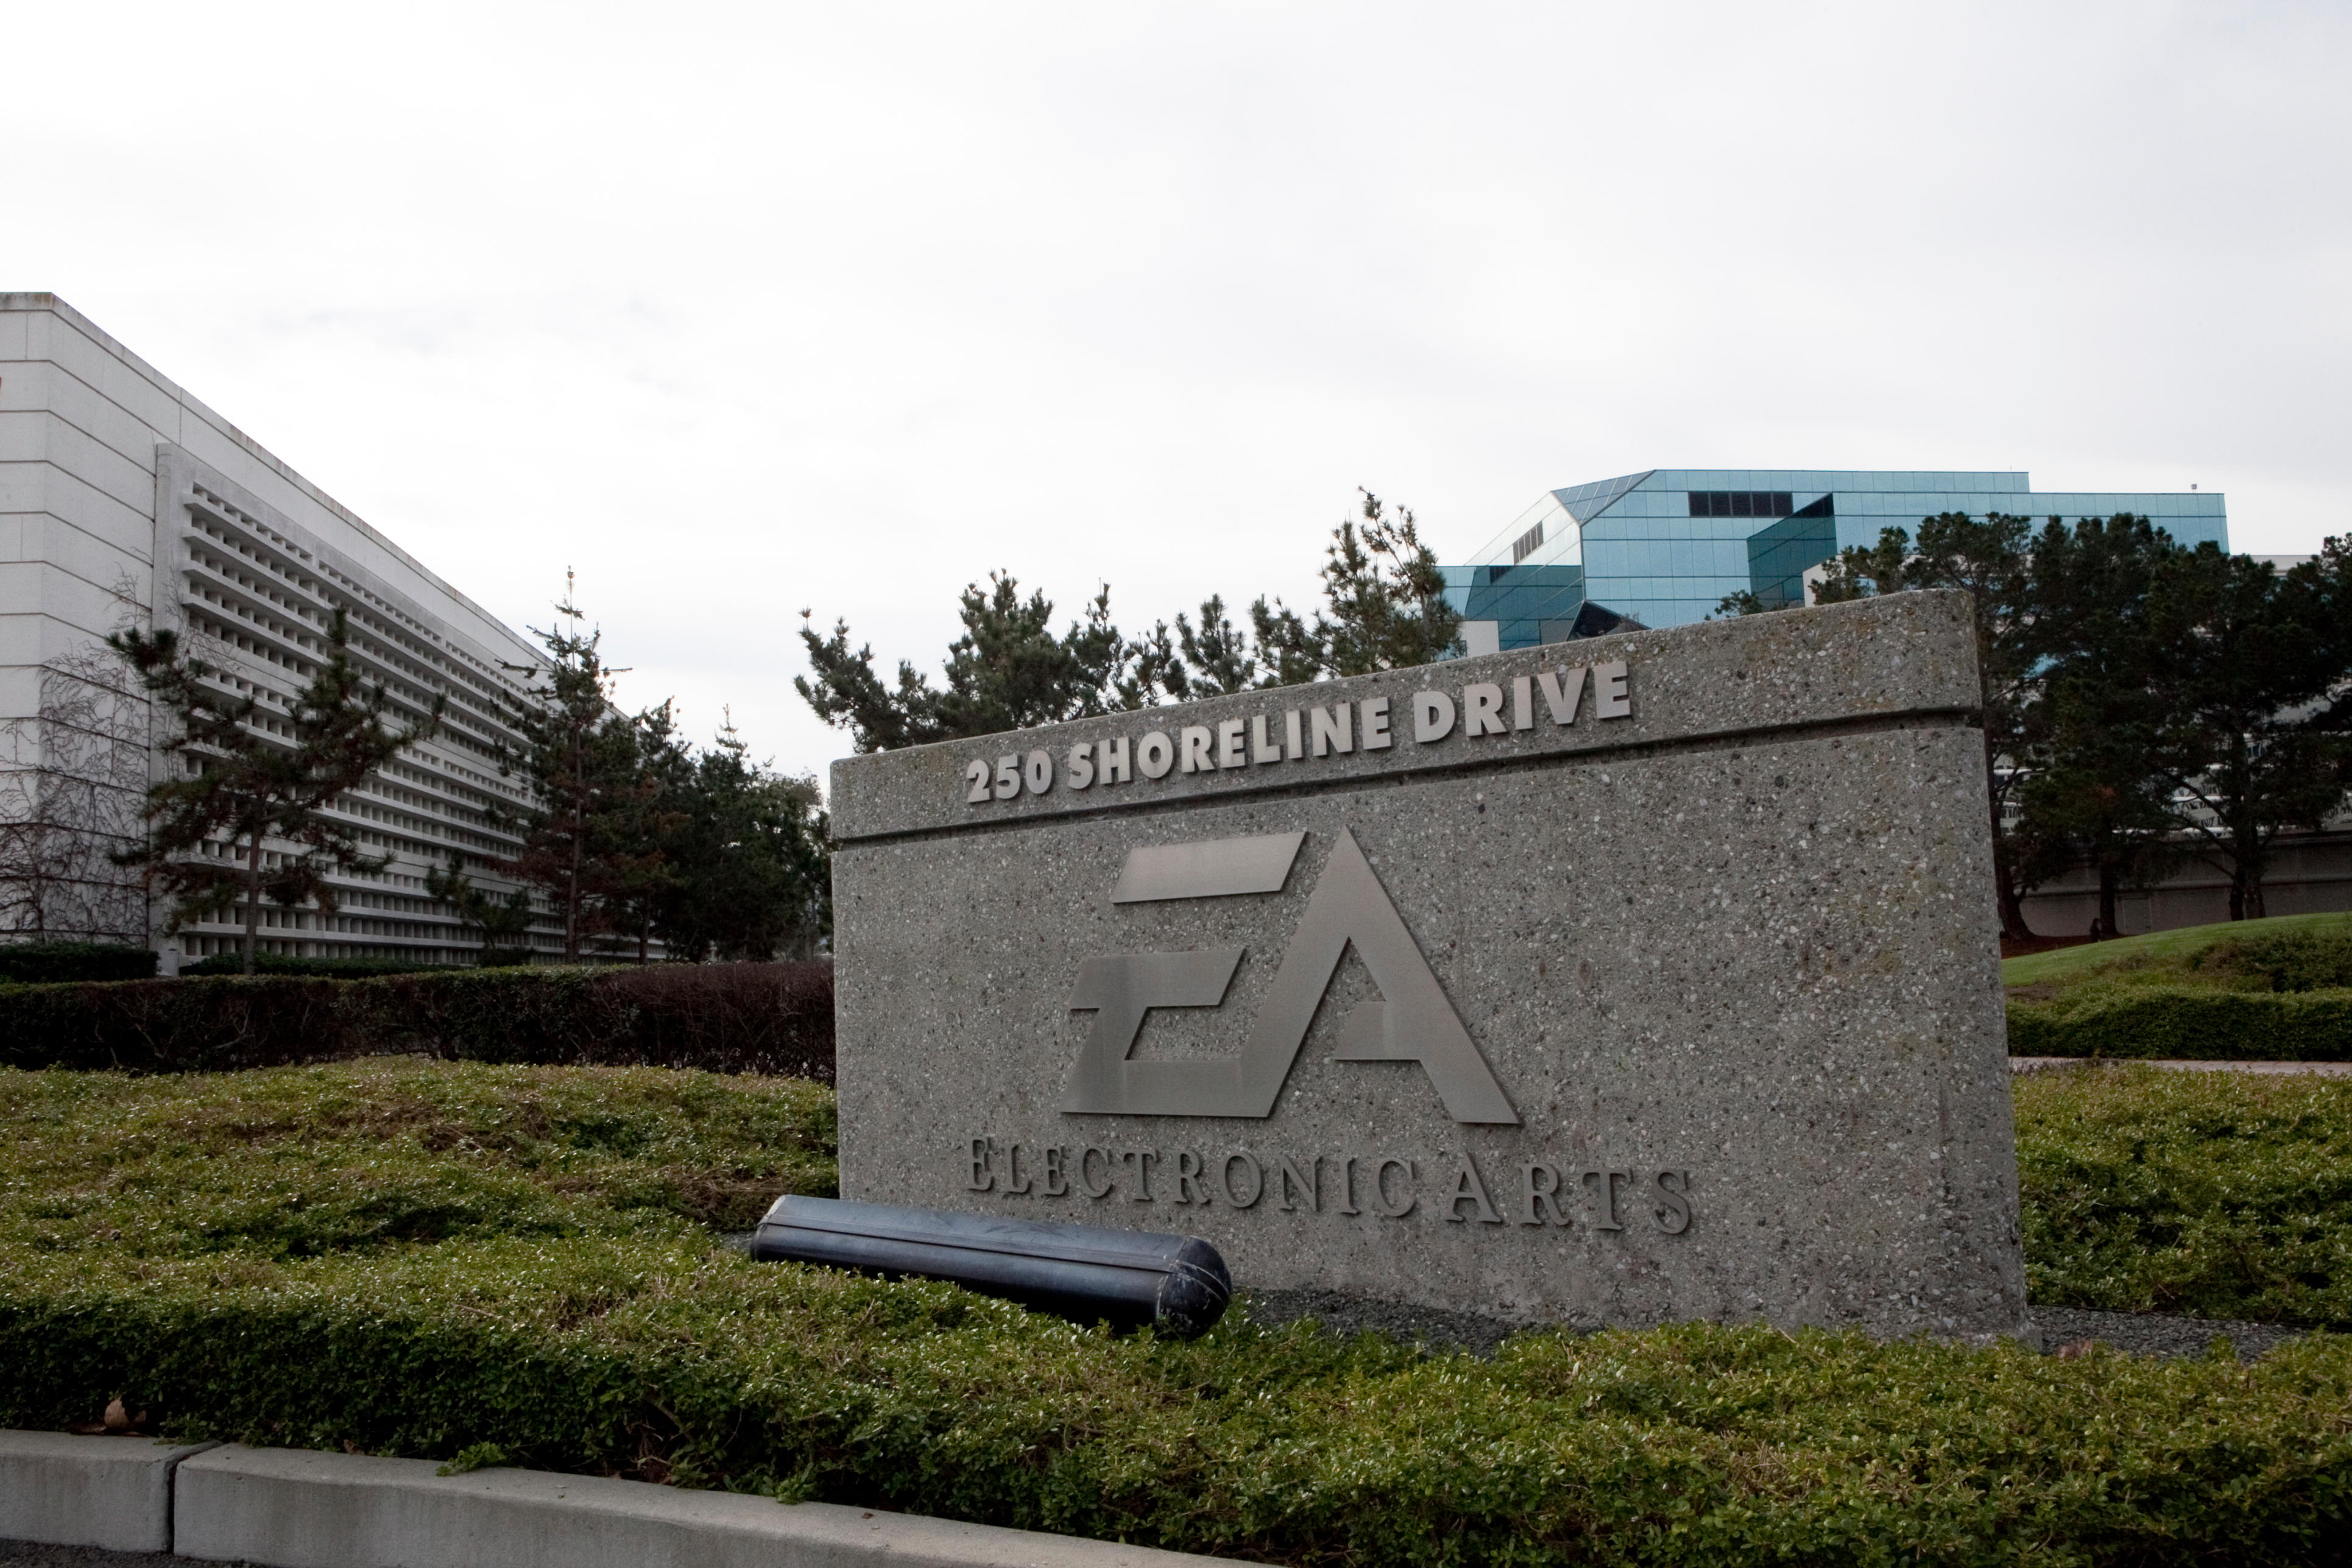 Electronic Arts HQ